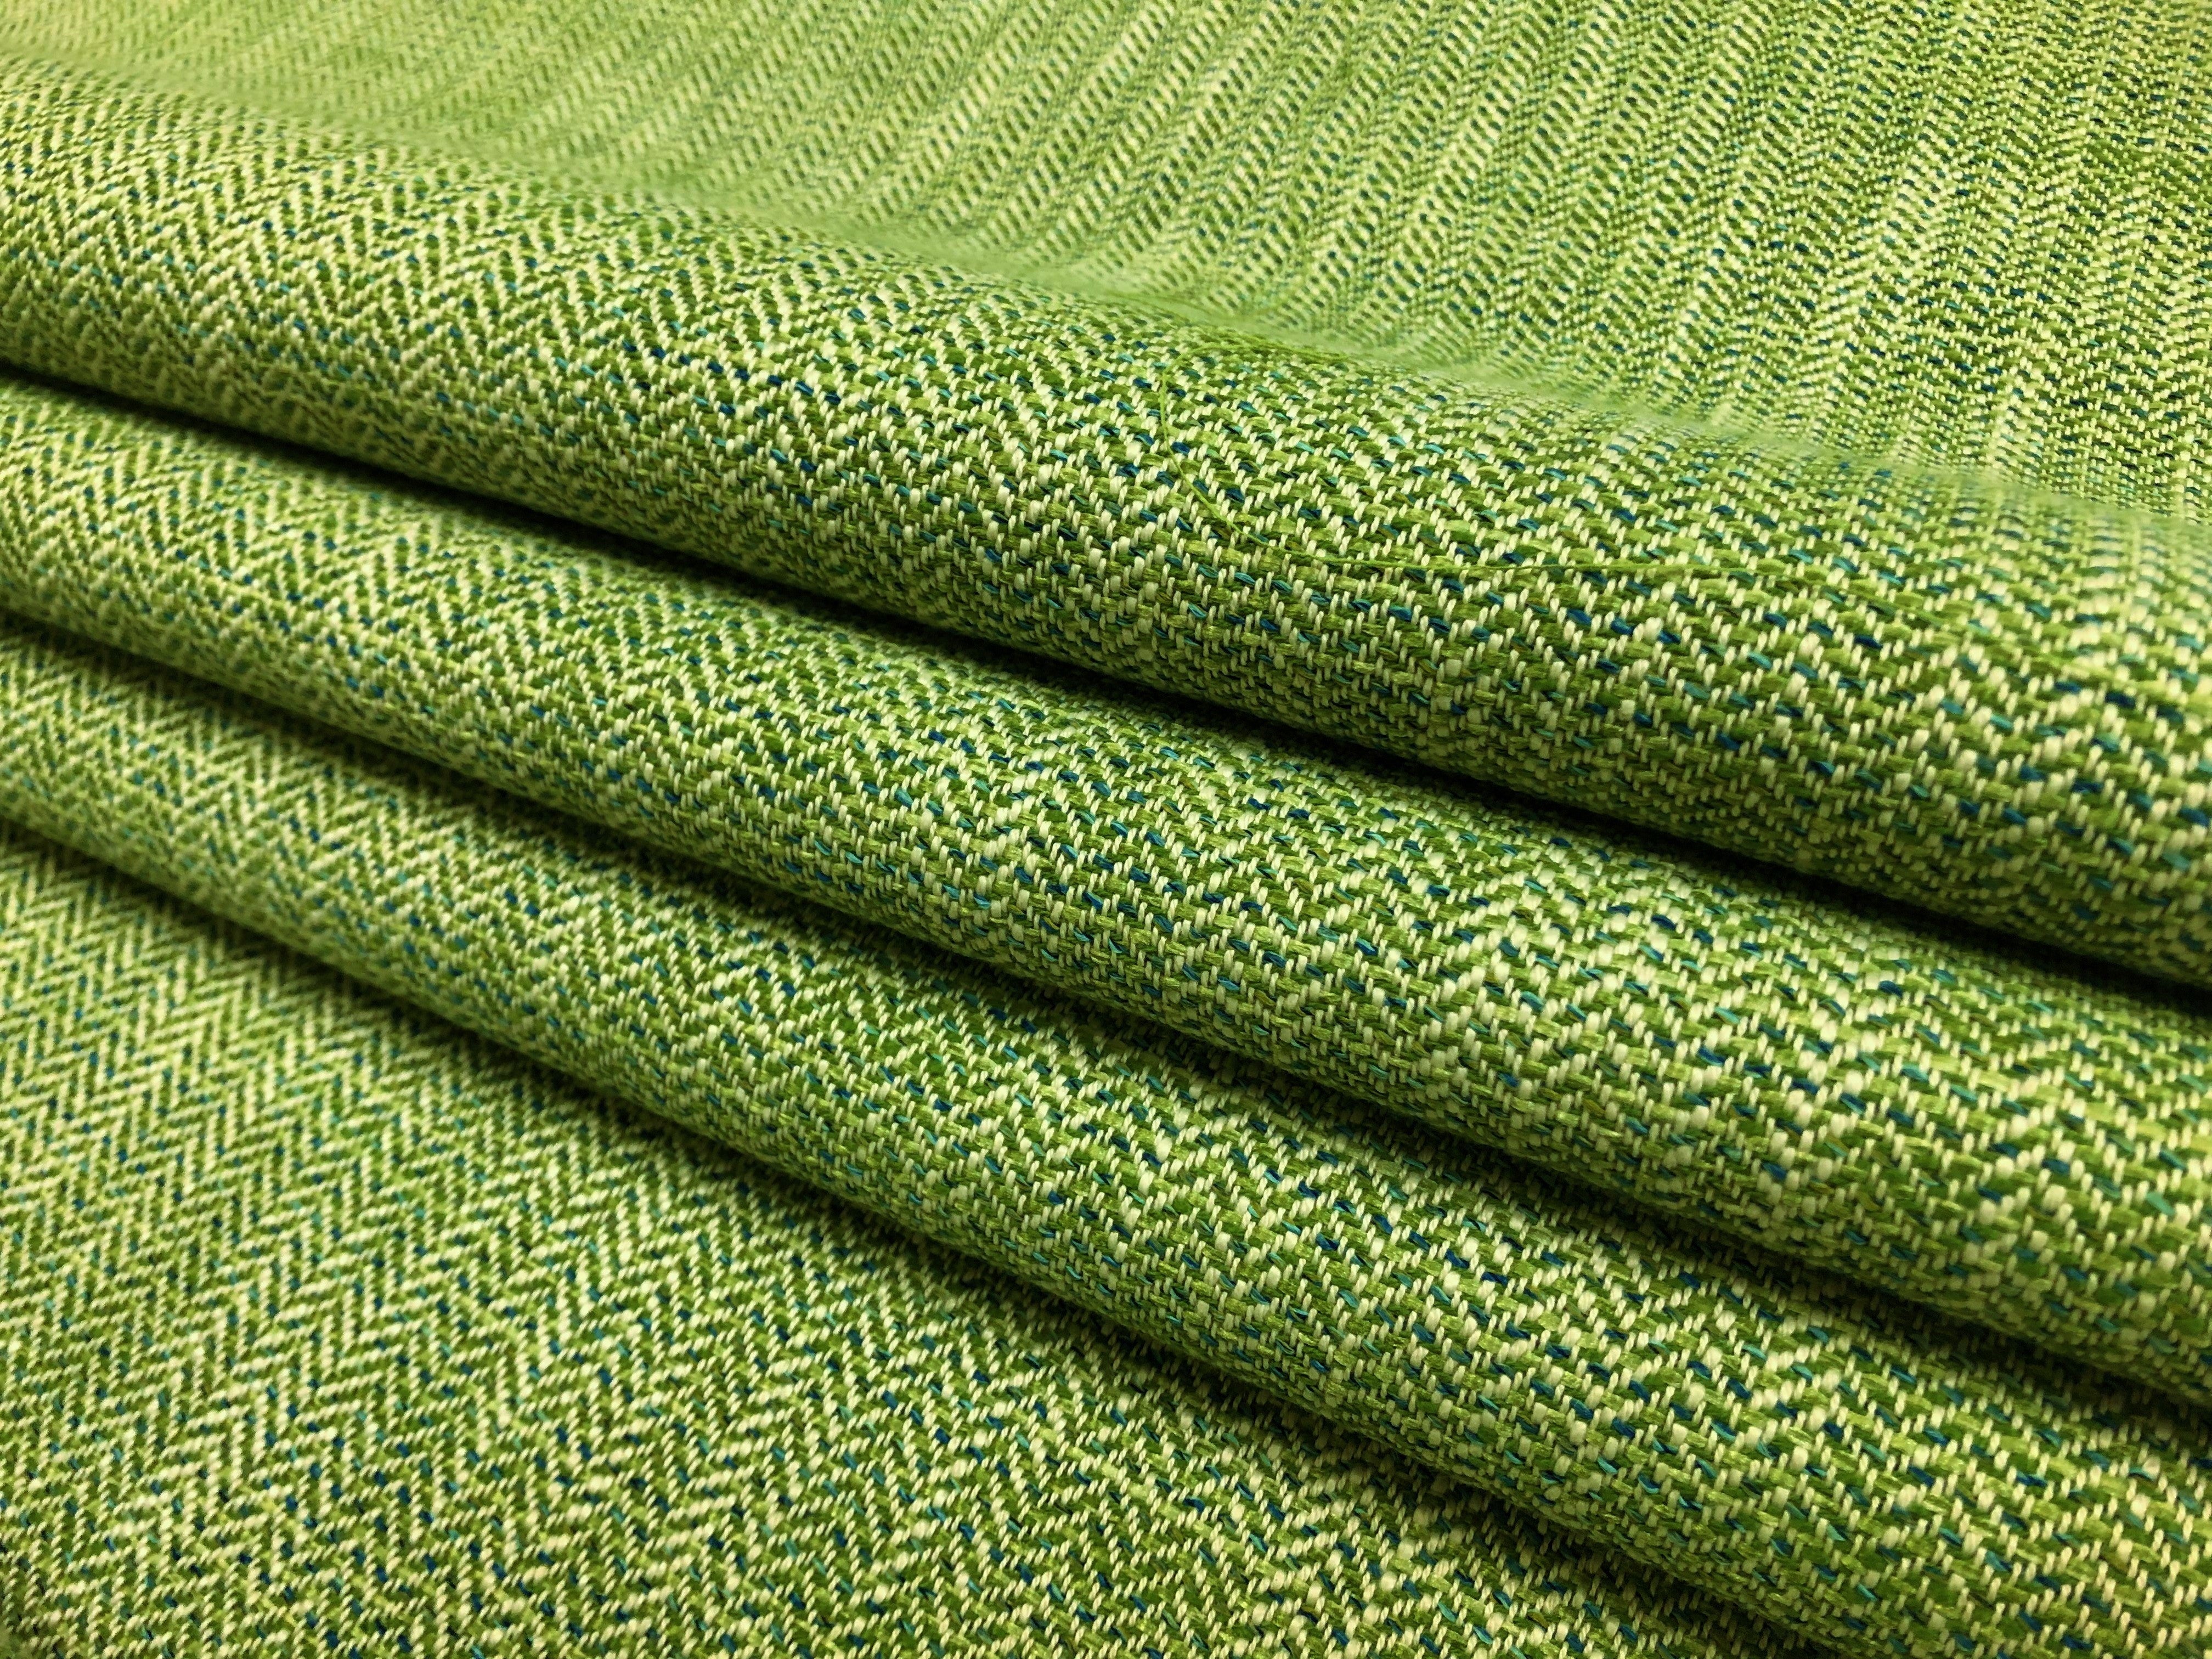 Italian Green Woven Fabric Trim - 0.625